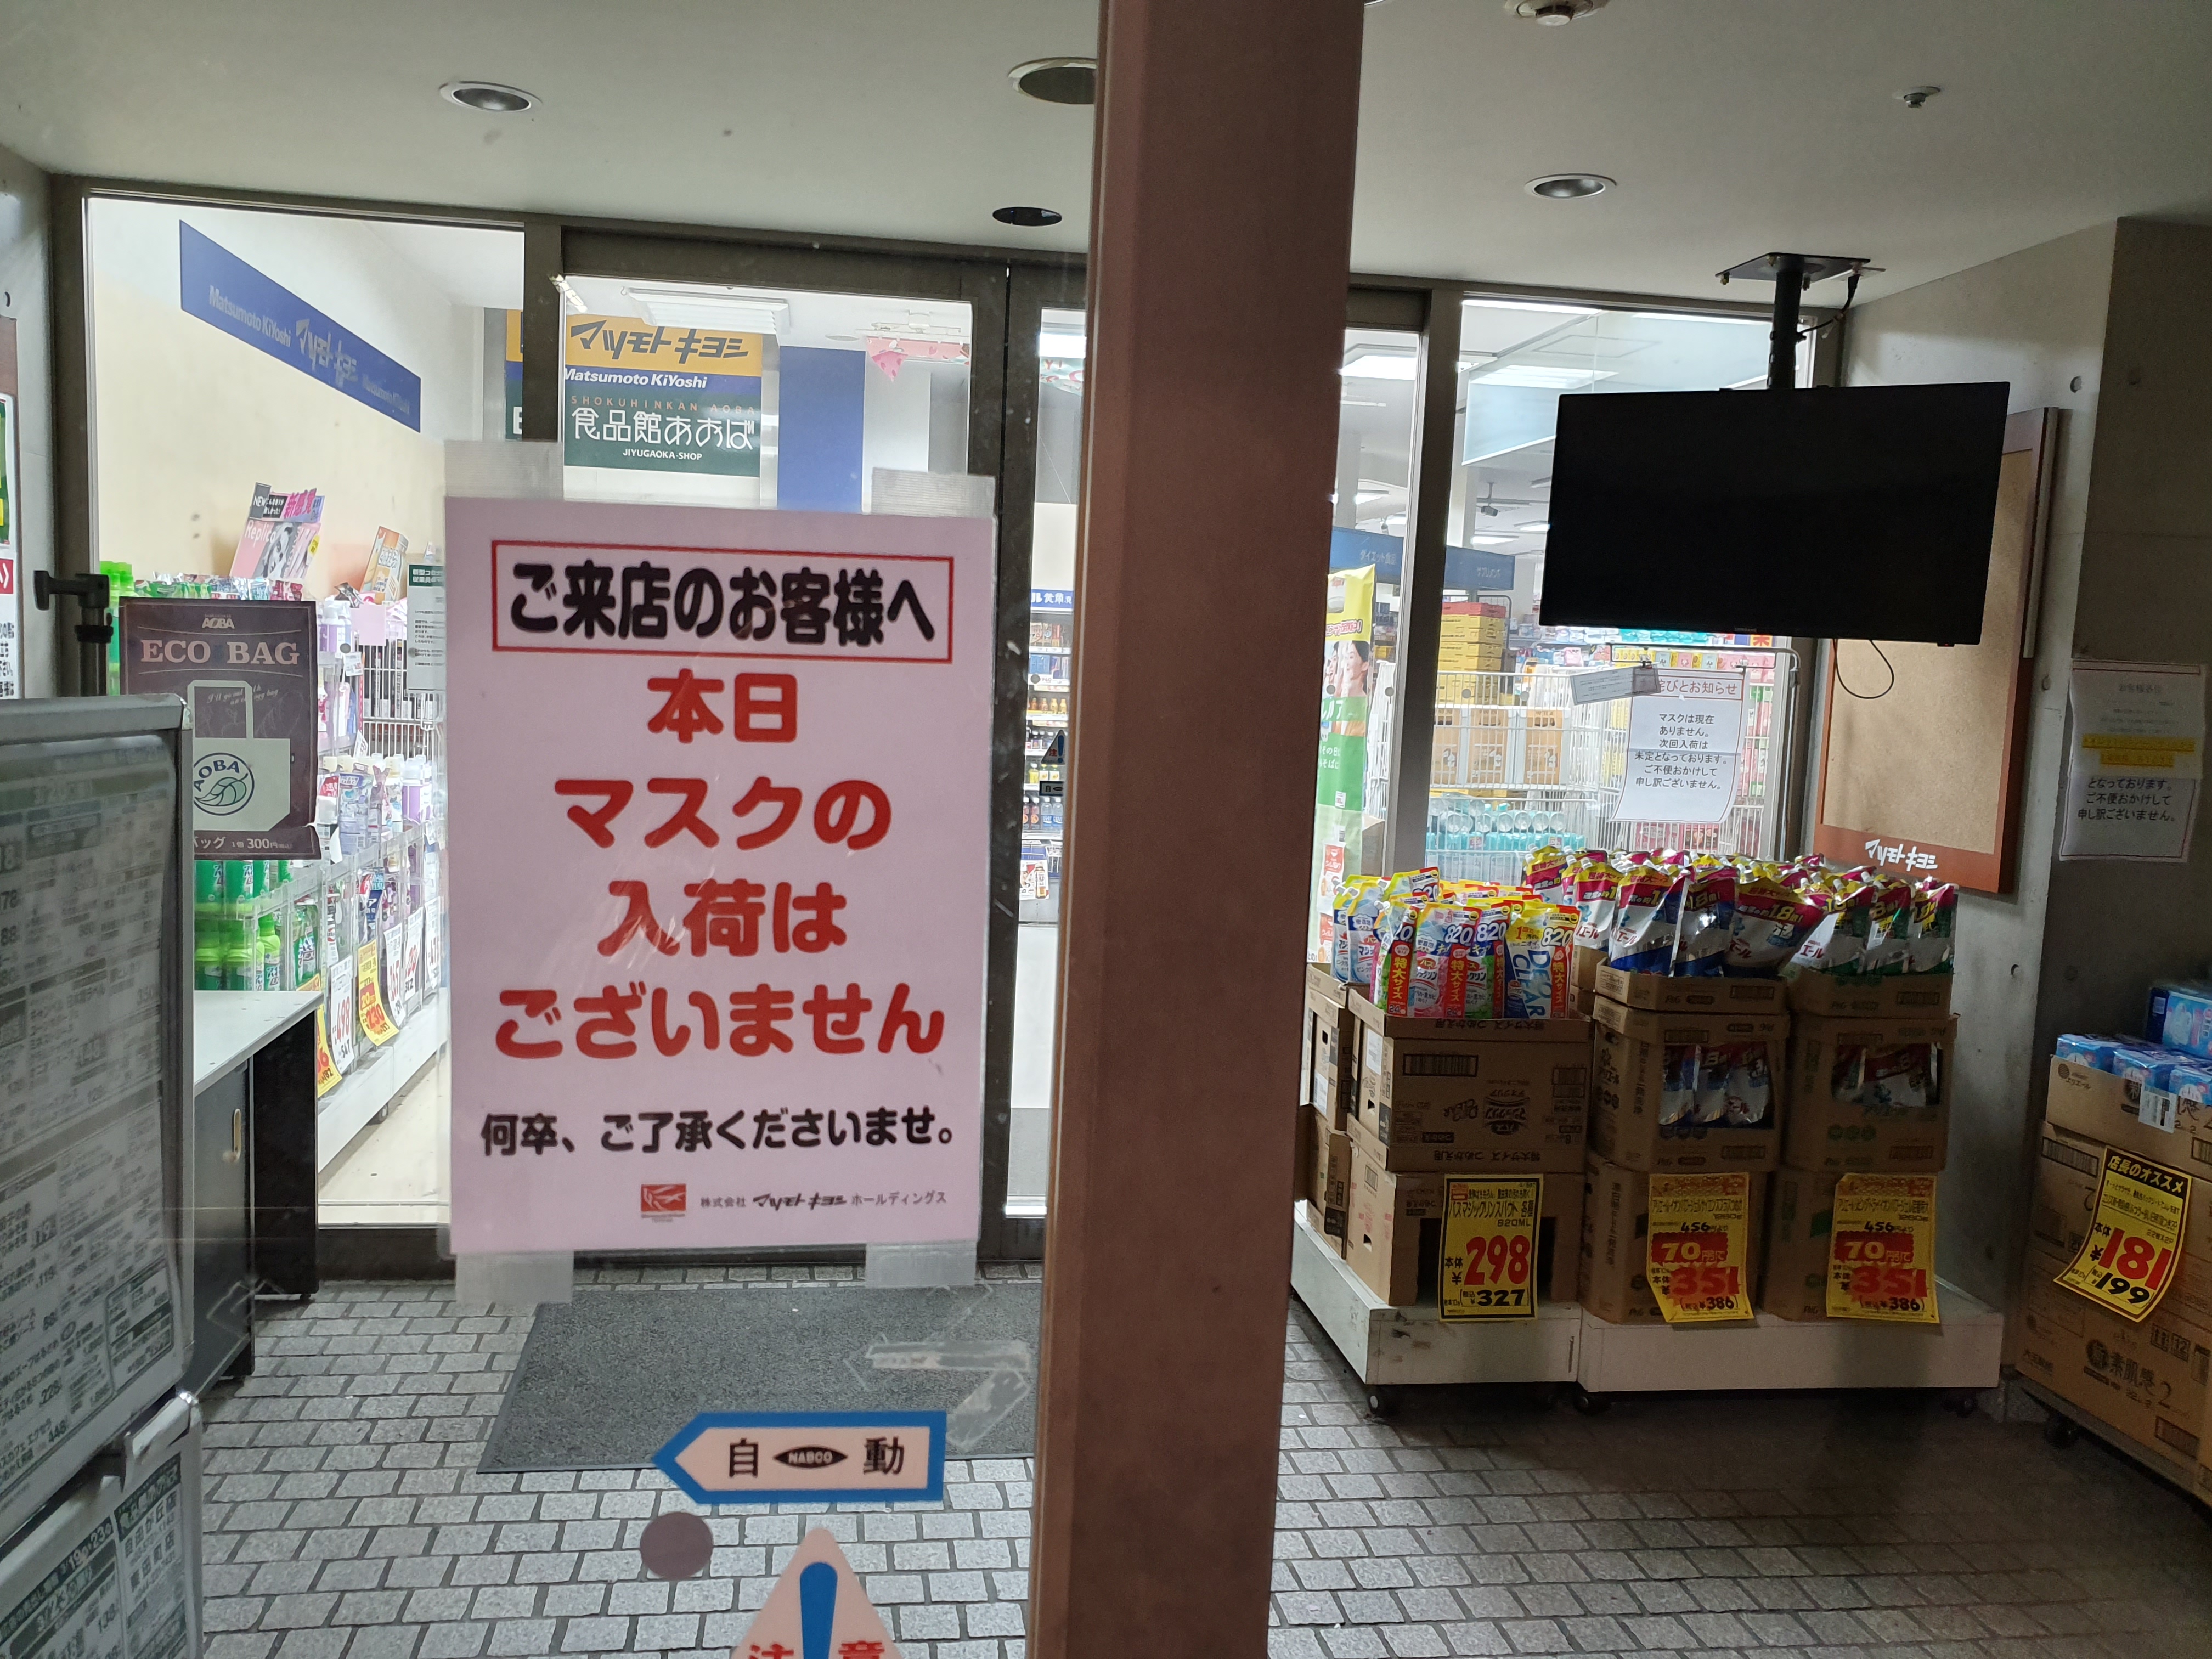 supermarket entrance